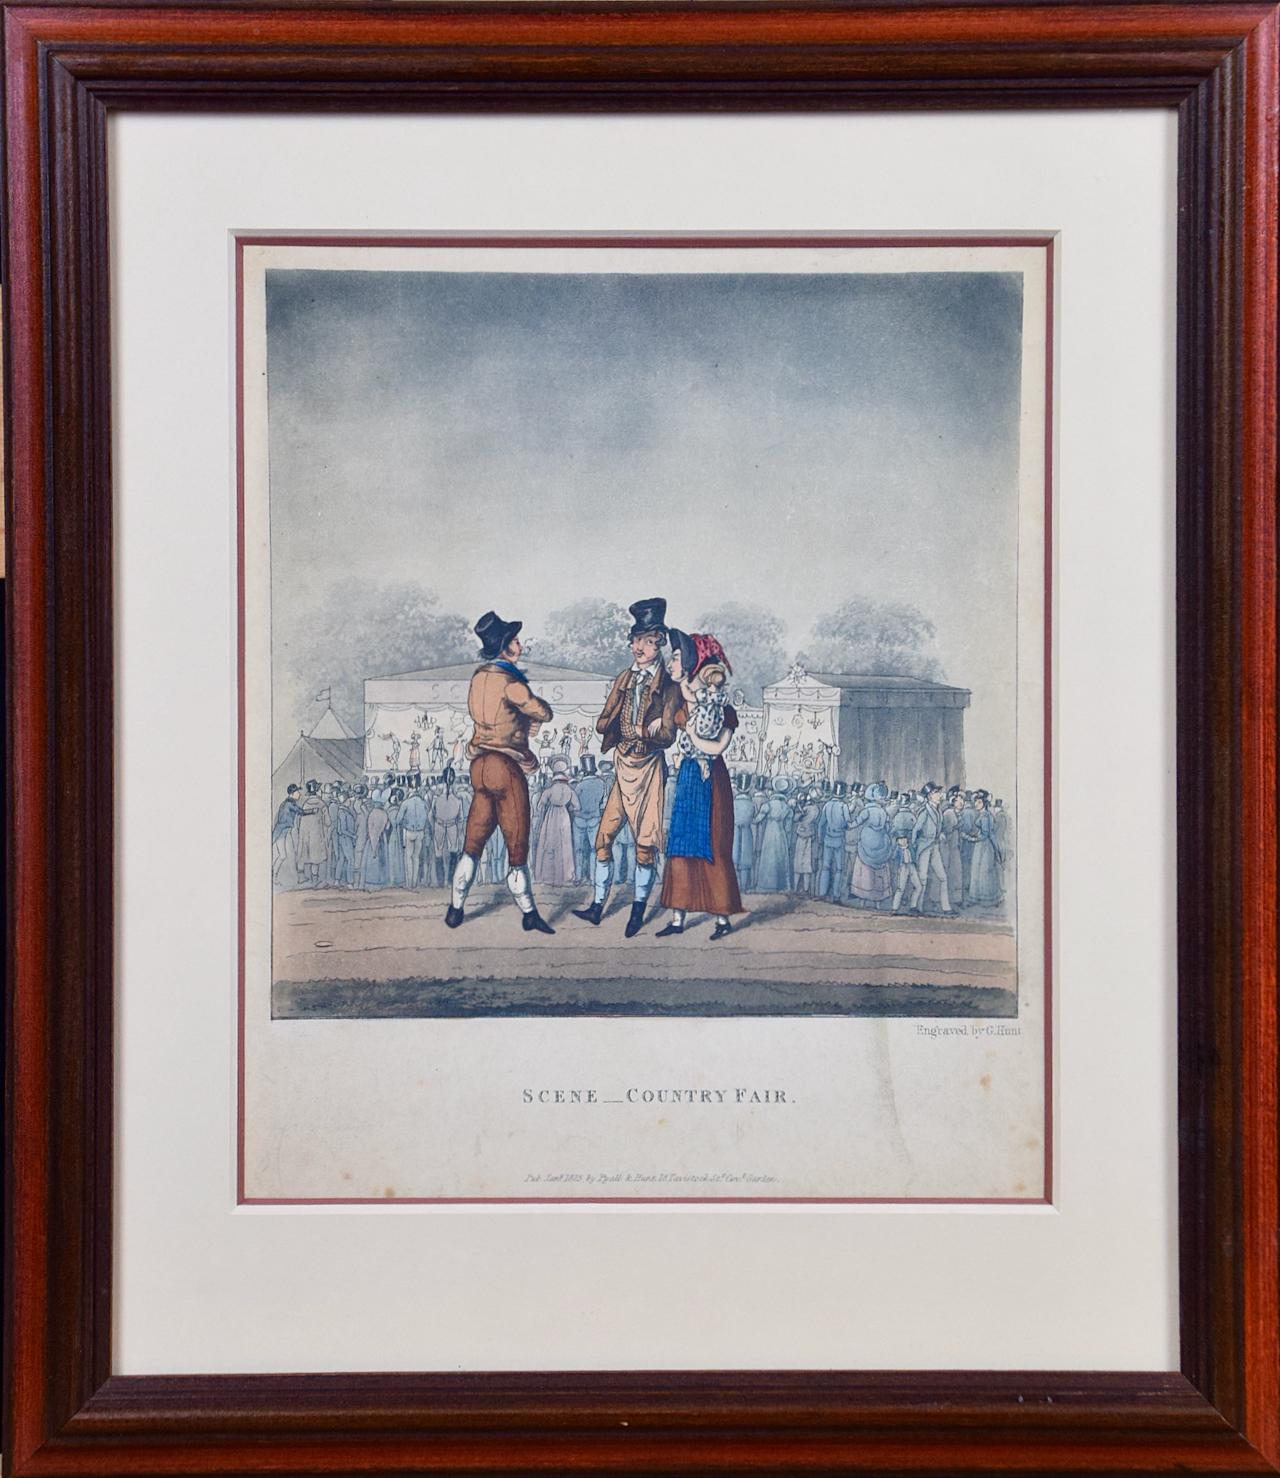 Il s'agit d'une gravure en couleur encadrée intitulée "Scene _ Country Fair" par George Hunt, publiée à Londres en 1825. Il représente un rassemblement de personnes lors d'une foire de comté du début du XIXe siècle, probablement en Angleterre. Une